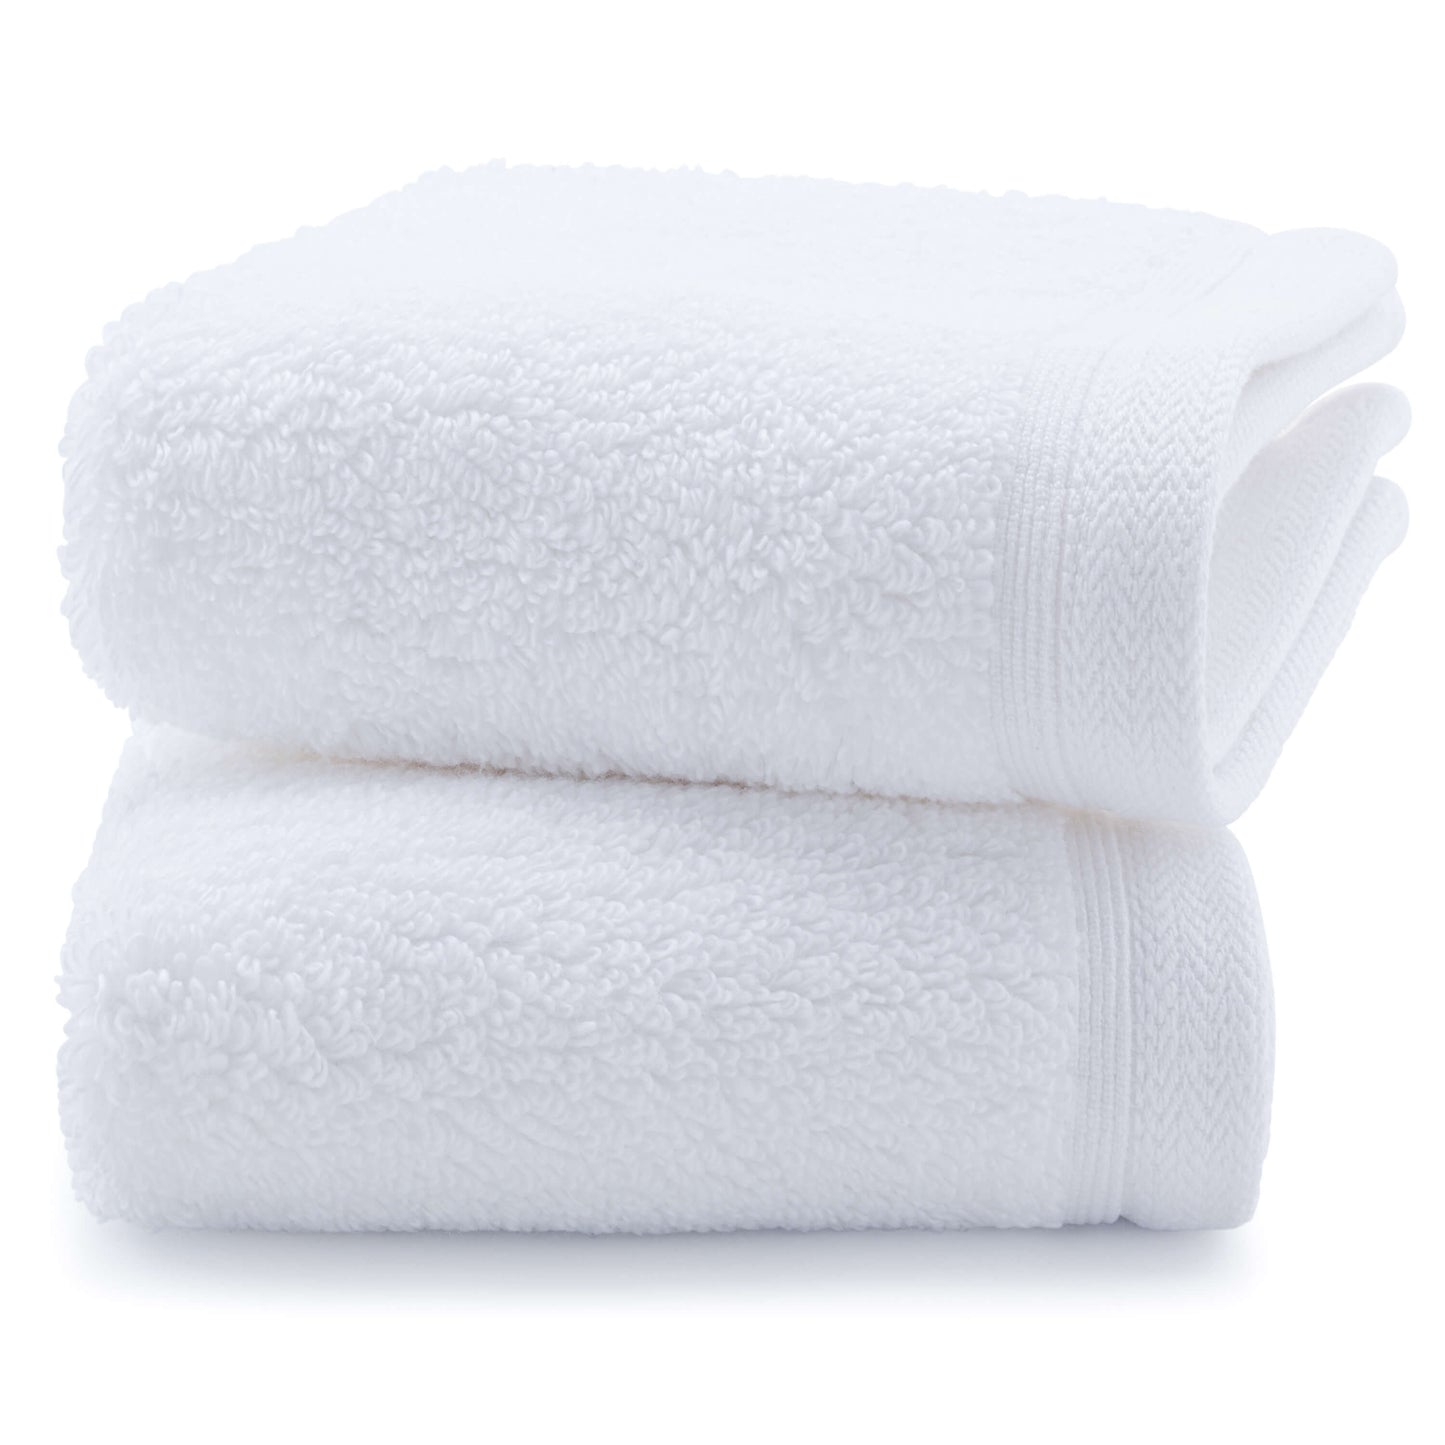 Egyptian Cotton Luxury Serenity Palace Plush Towel - White - 700GSM Zero Twist